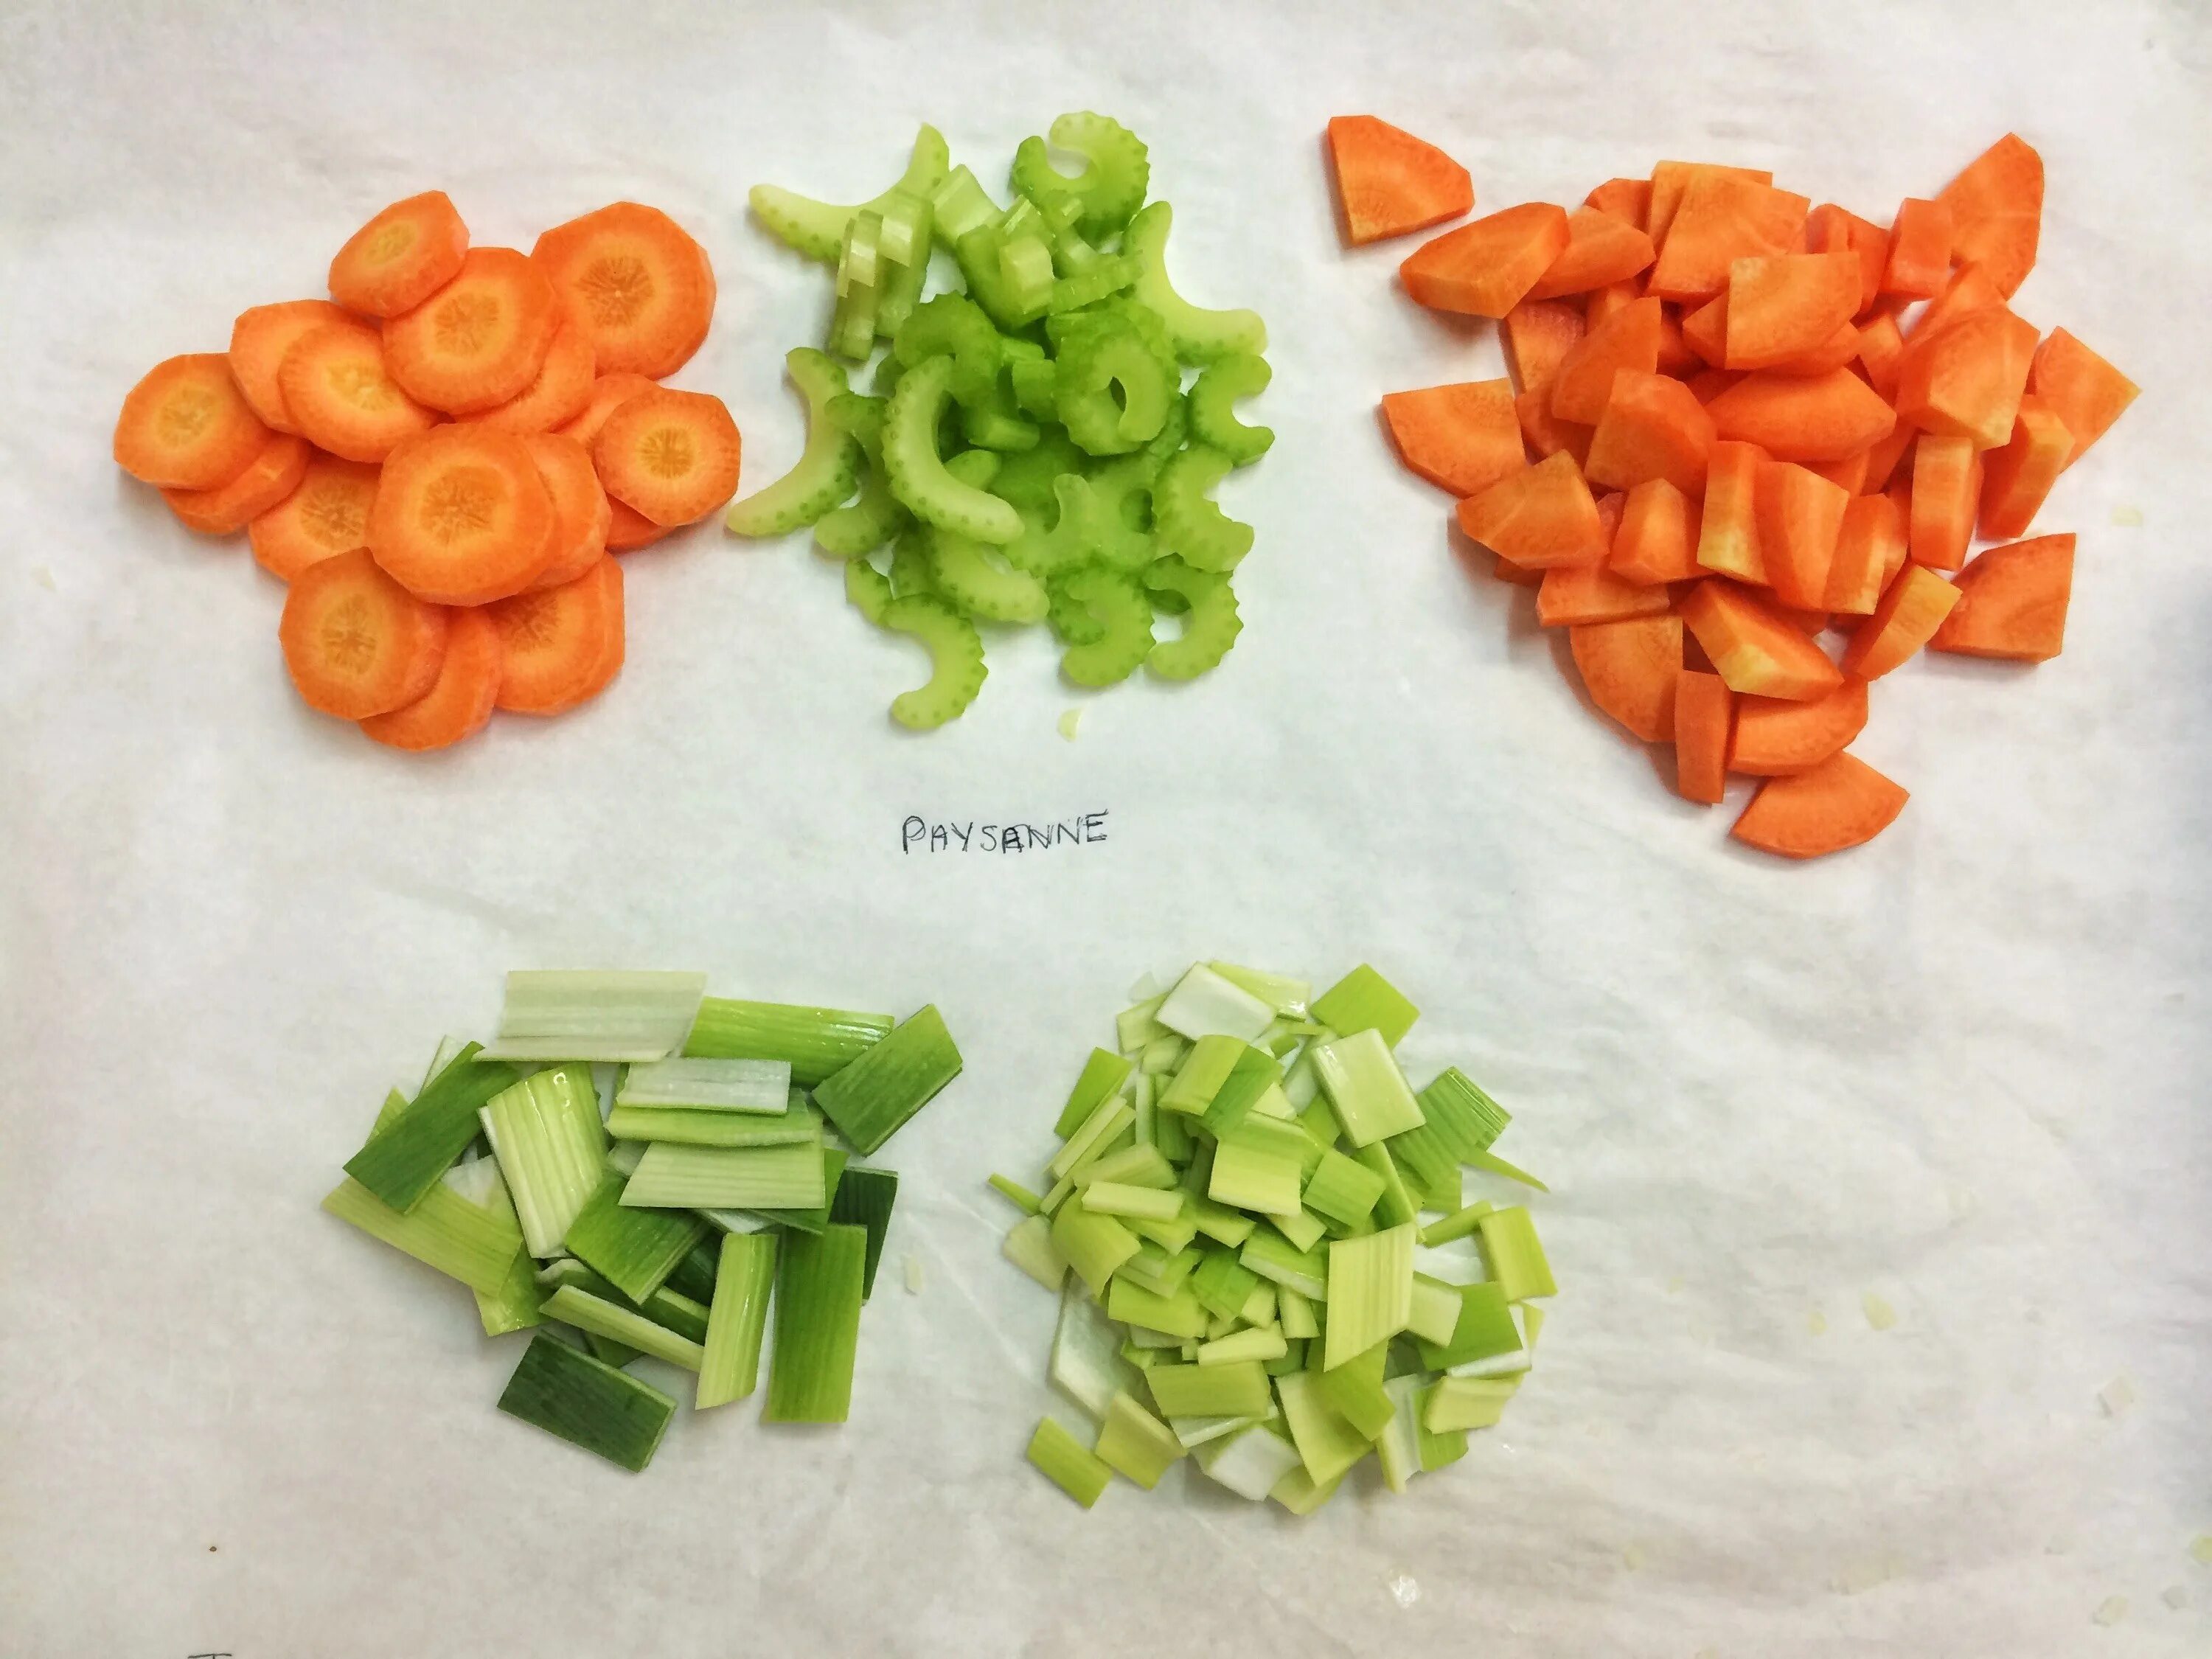 Нарезка овощей ручную. Paysanne нарезка овощей. Paysanne нарезка моркови. Paysanne (пейзан) нарезка. Овощи нарезают тонкими ломтиками.